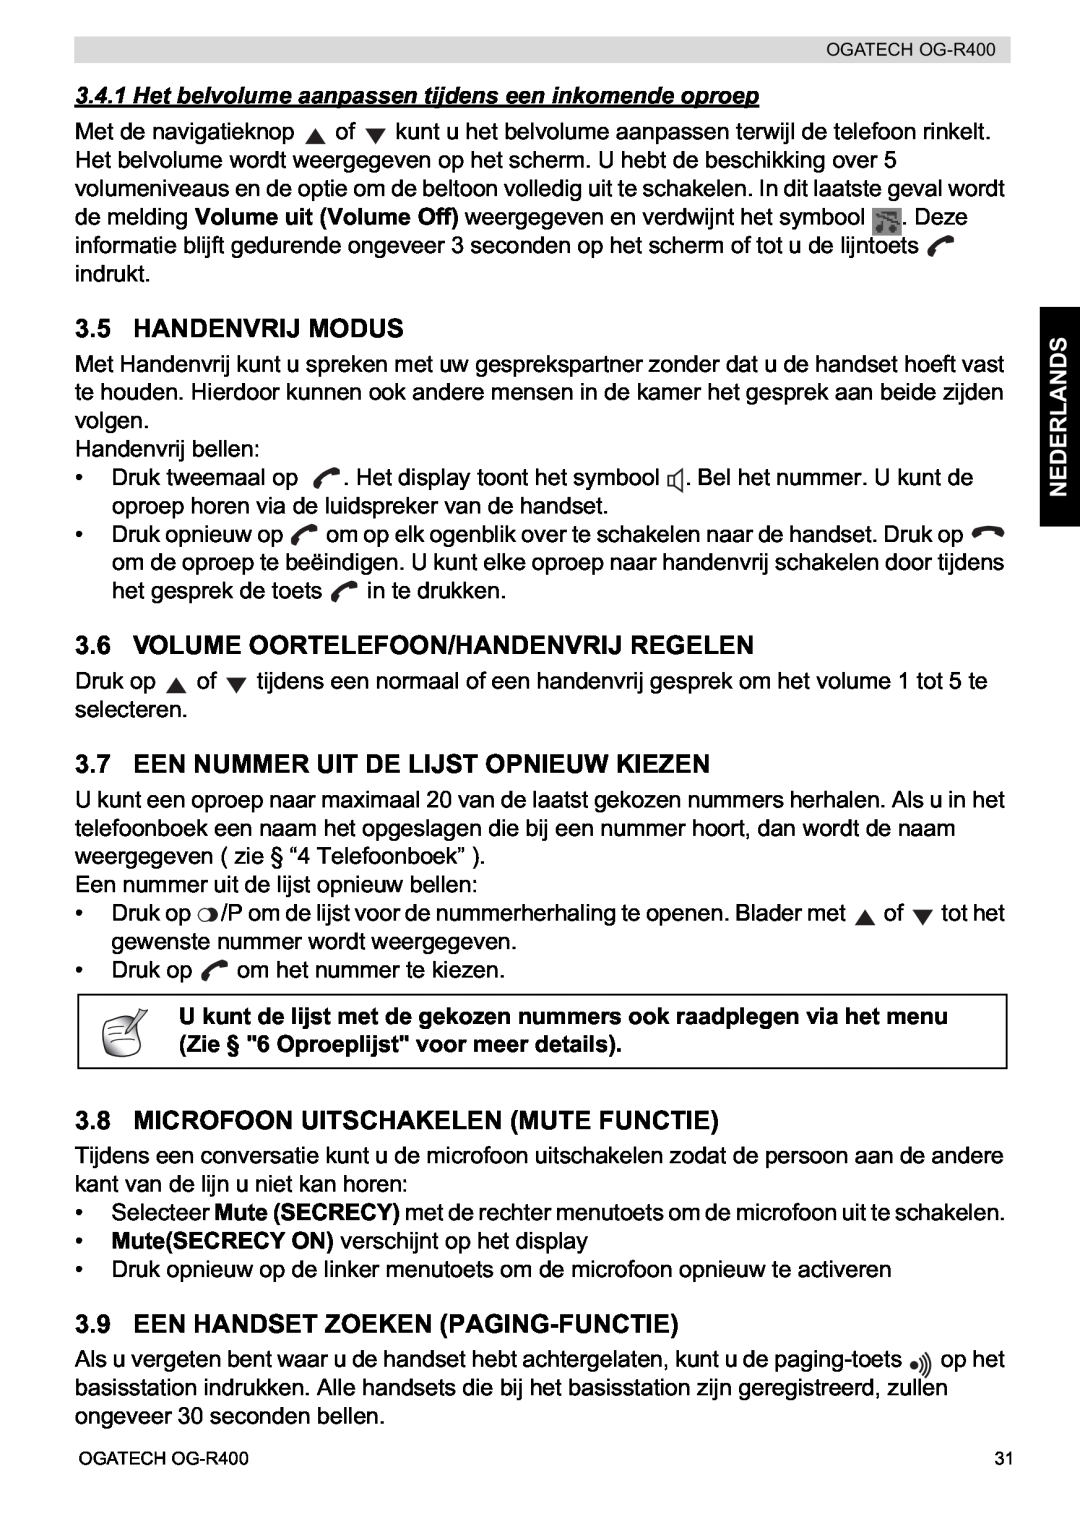 Topcom OG-R400 Handenvrij Modus, Volume Oortelefoon/Handenvrij Regelen, Een Nummer Uit De Lijst Opnieuw Kiezen, Nederlands 